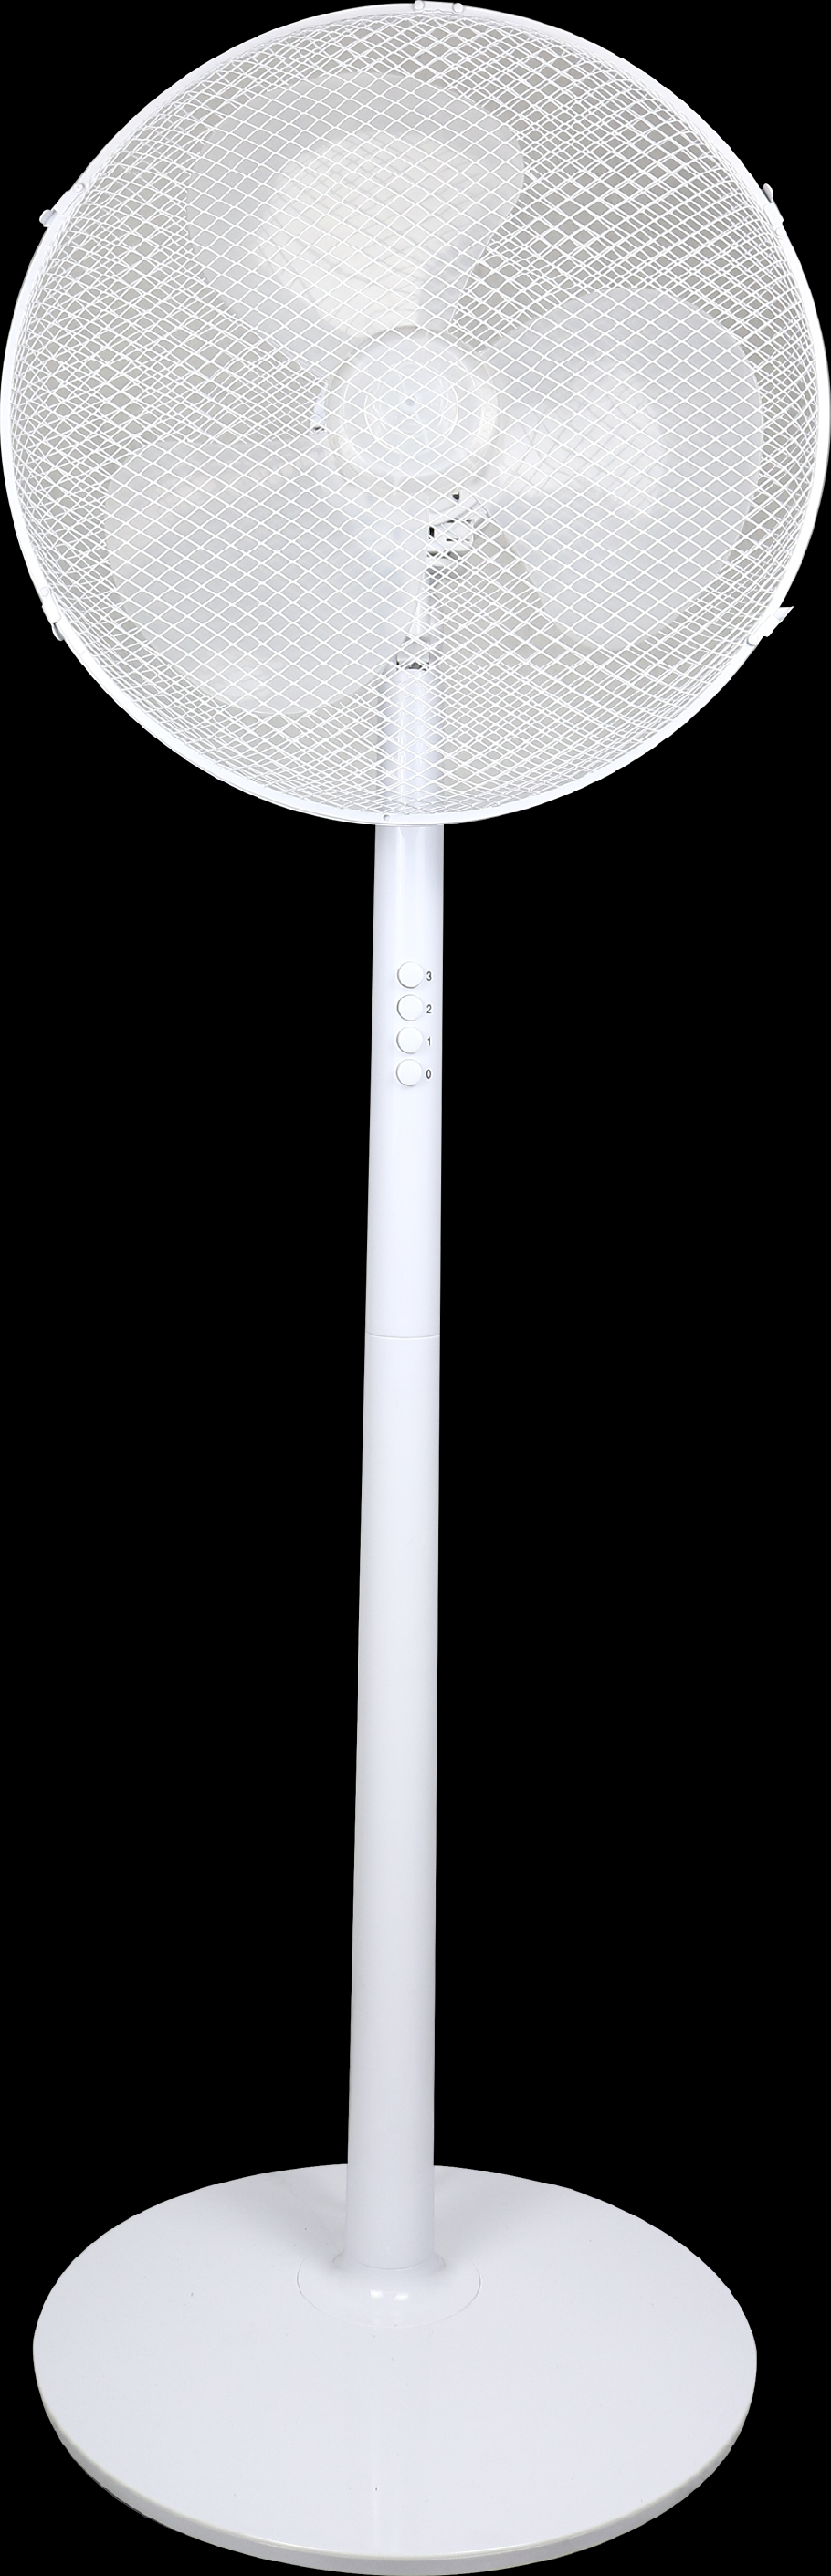 Stojanový ventilátor 16"", bílý 40W DEDRA DA-1610